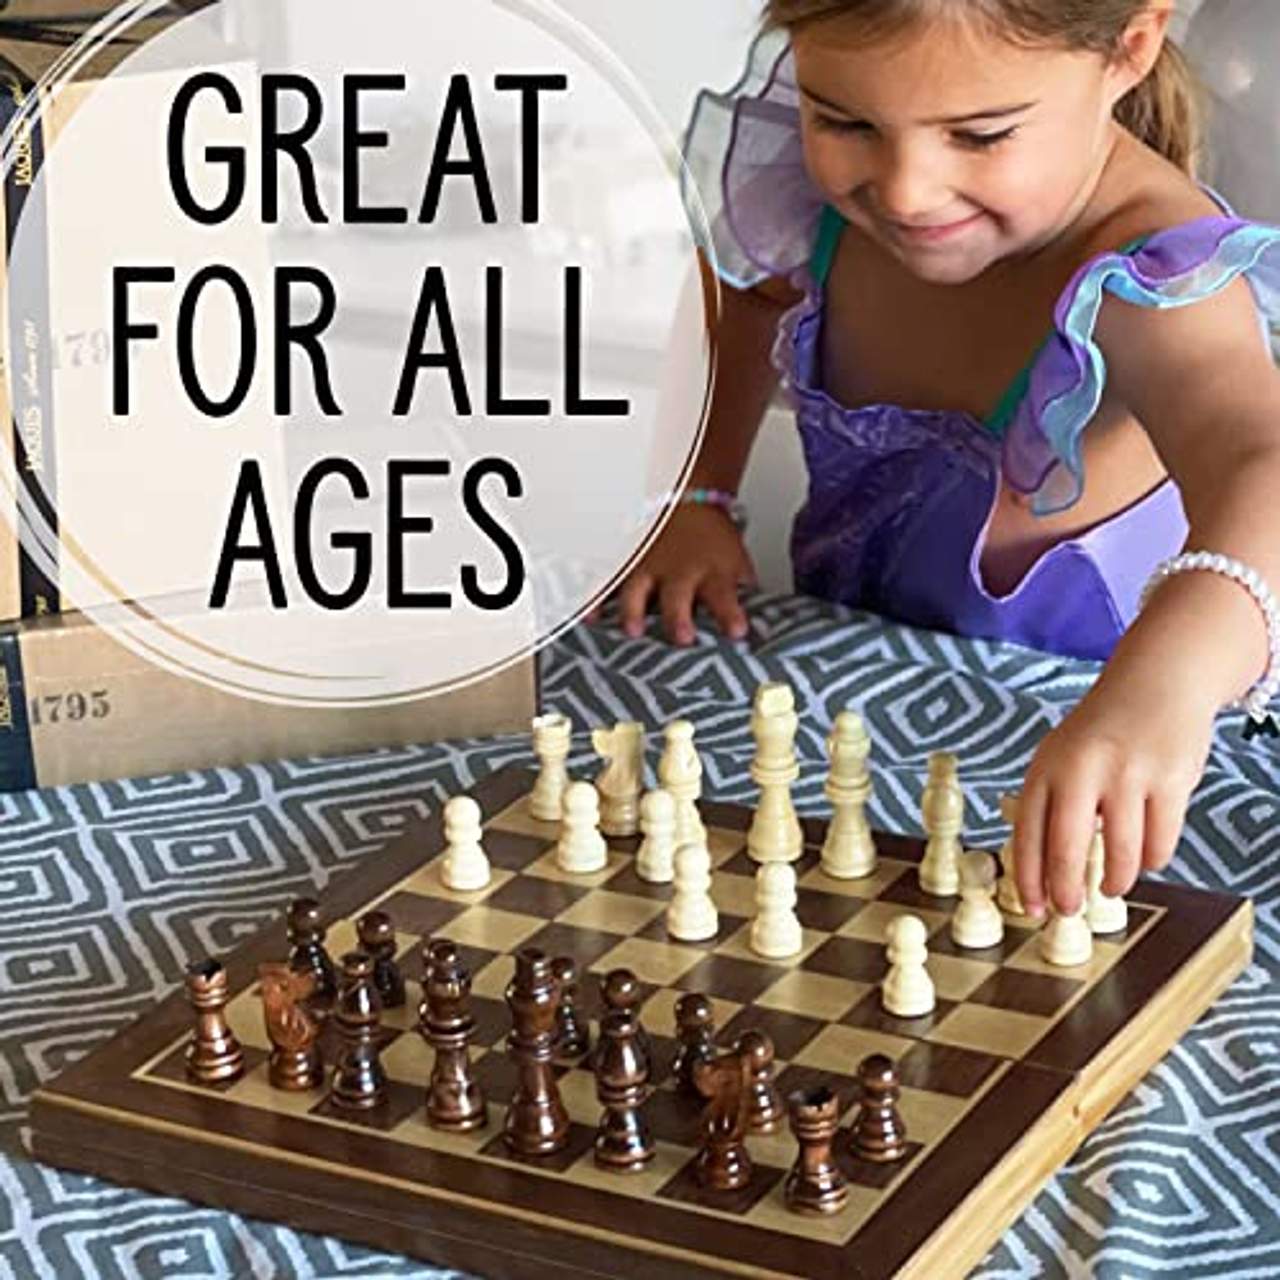 Jaques Von London Schach 15” Staunton schachspiel Holz hochwertig